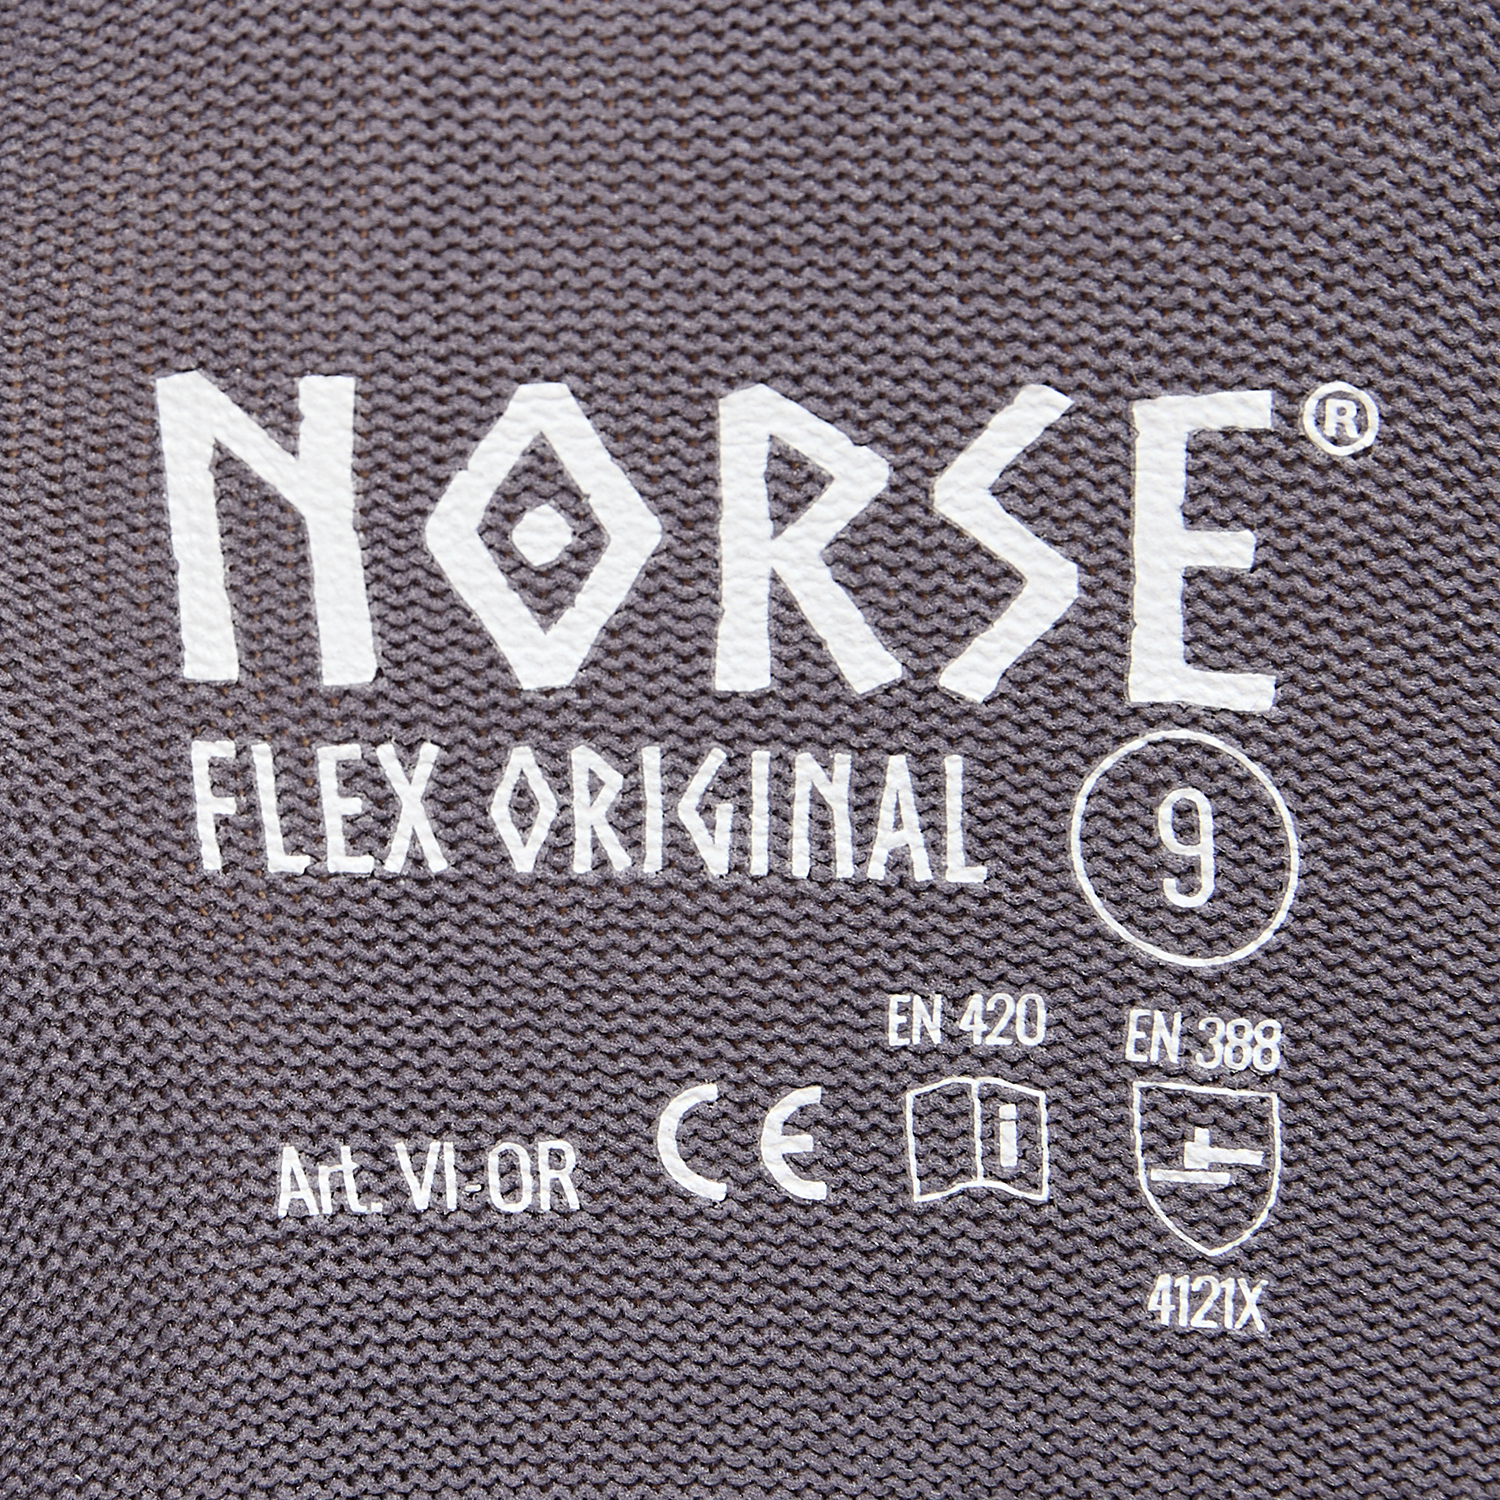 NORSE Flex Original Montagehandschuhe Größe 11